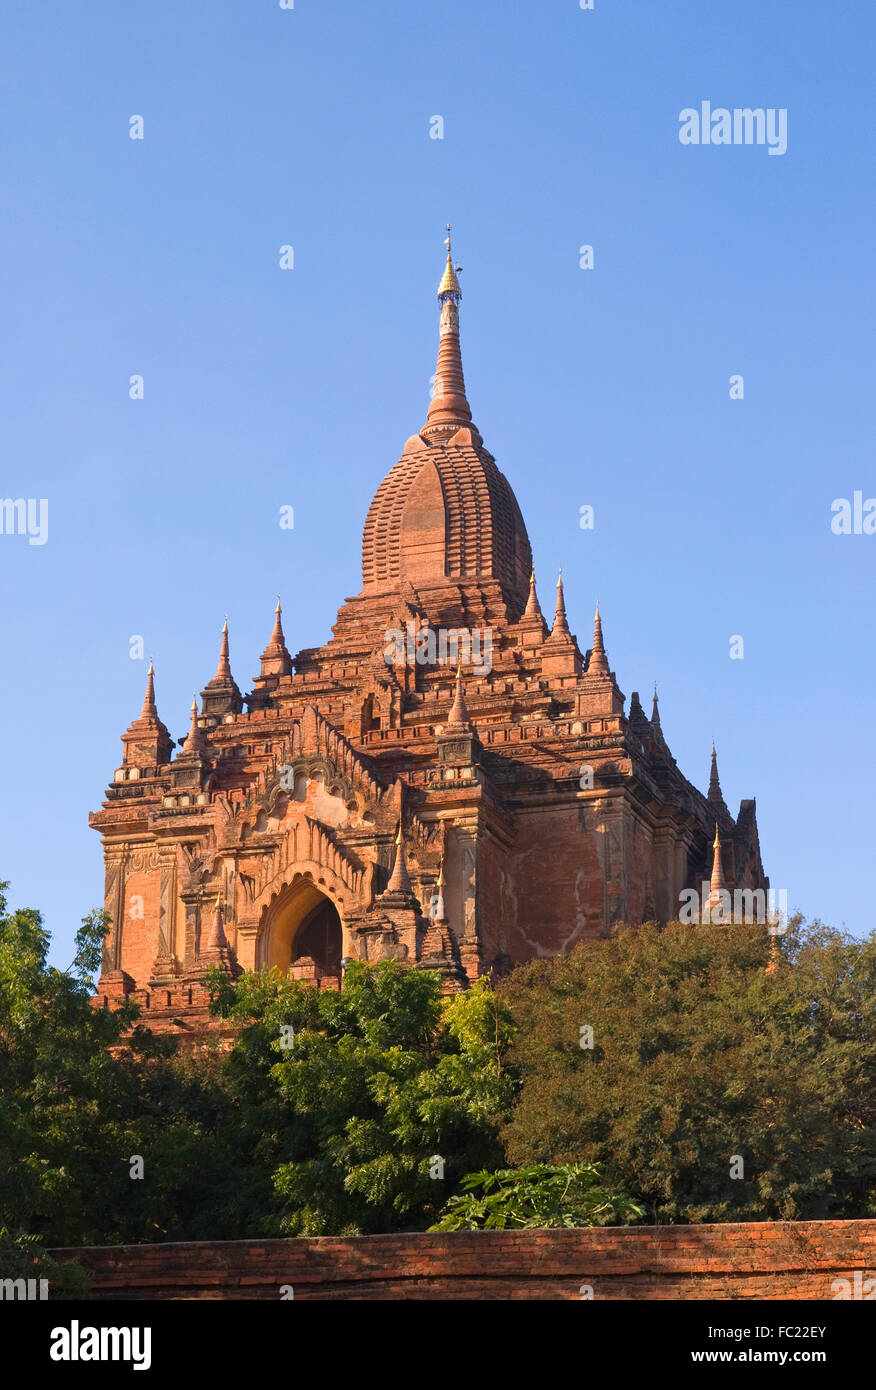 Htl-lo-min-lo pagoda in Bagan, Myanmar Stock Photo